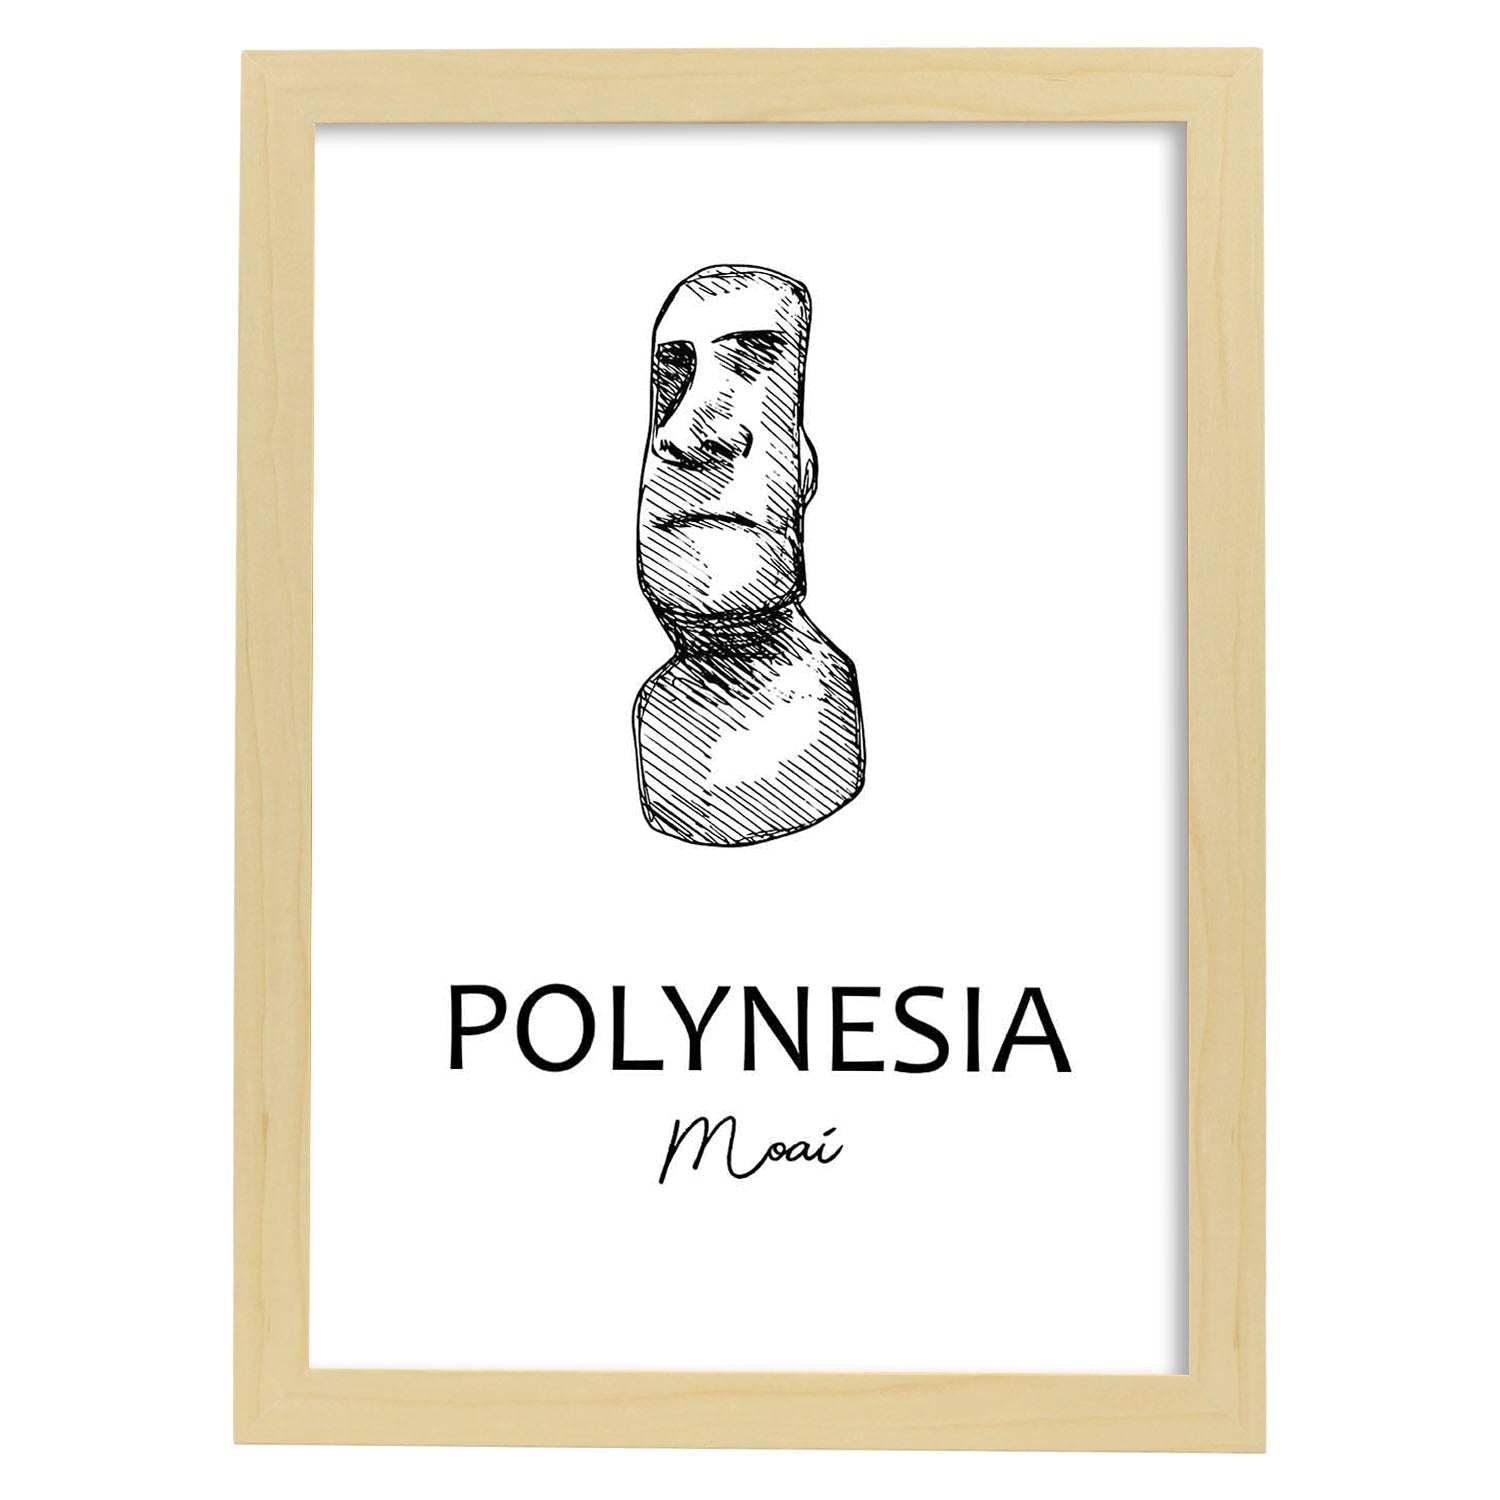 Poster de Polinesia - Moai. Láminas con monumentos de ciudades.-Artwork-Nacnic-A4-Marco Madera clara-Nacnic Estudio SL